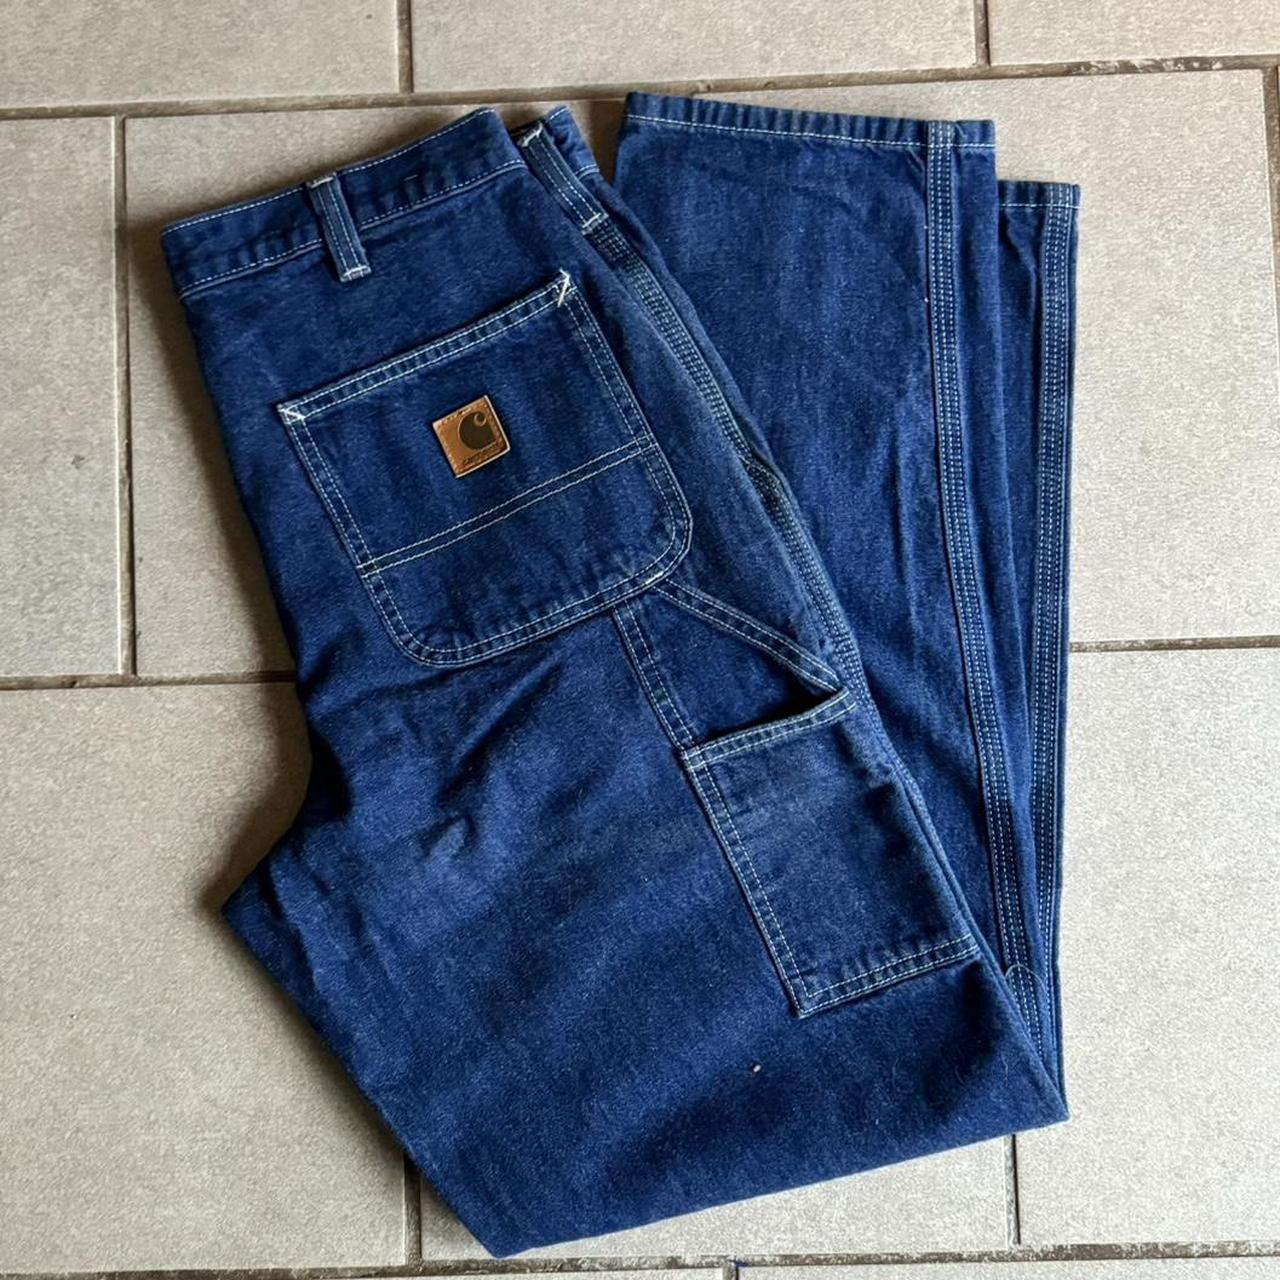 Carhartt cargo jeans. Size 32x32. #carhartt #cargos... - Depop